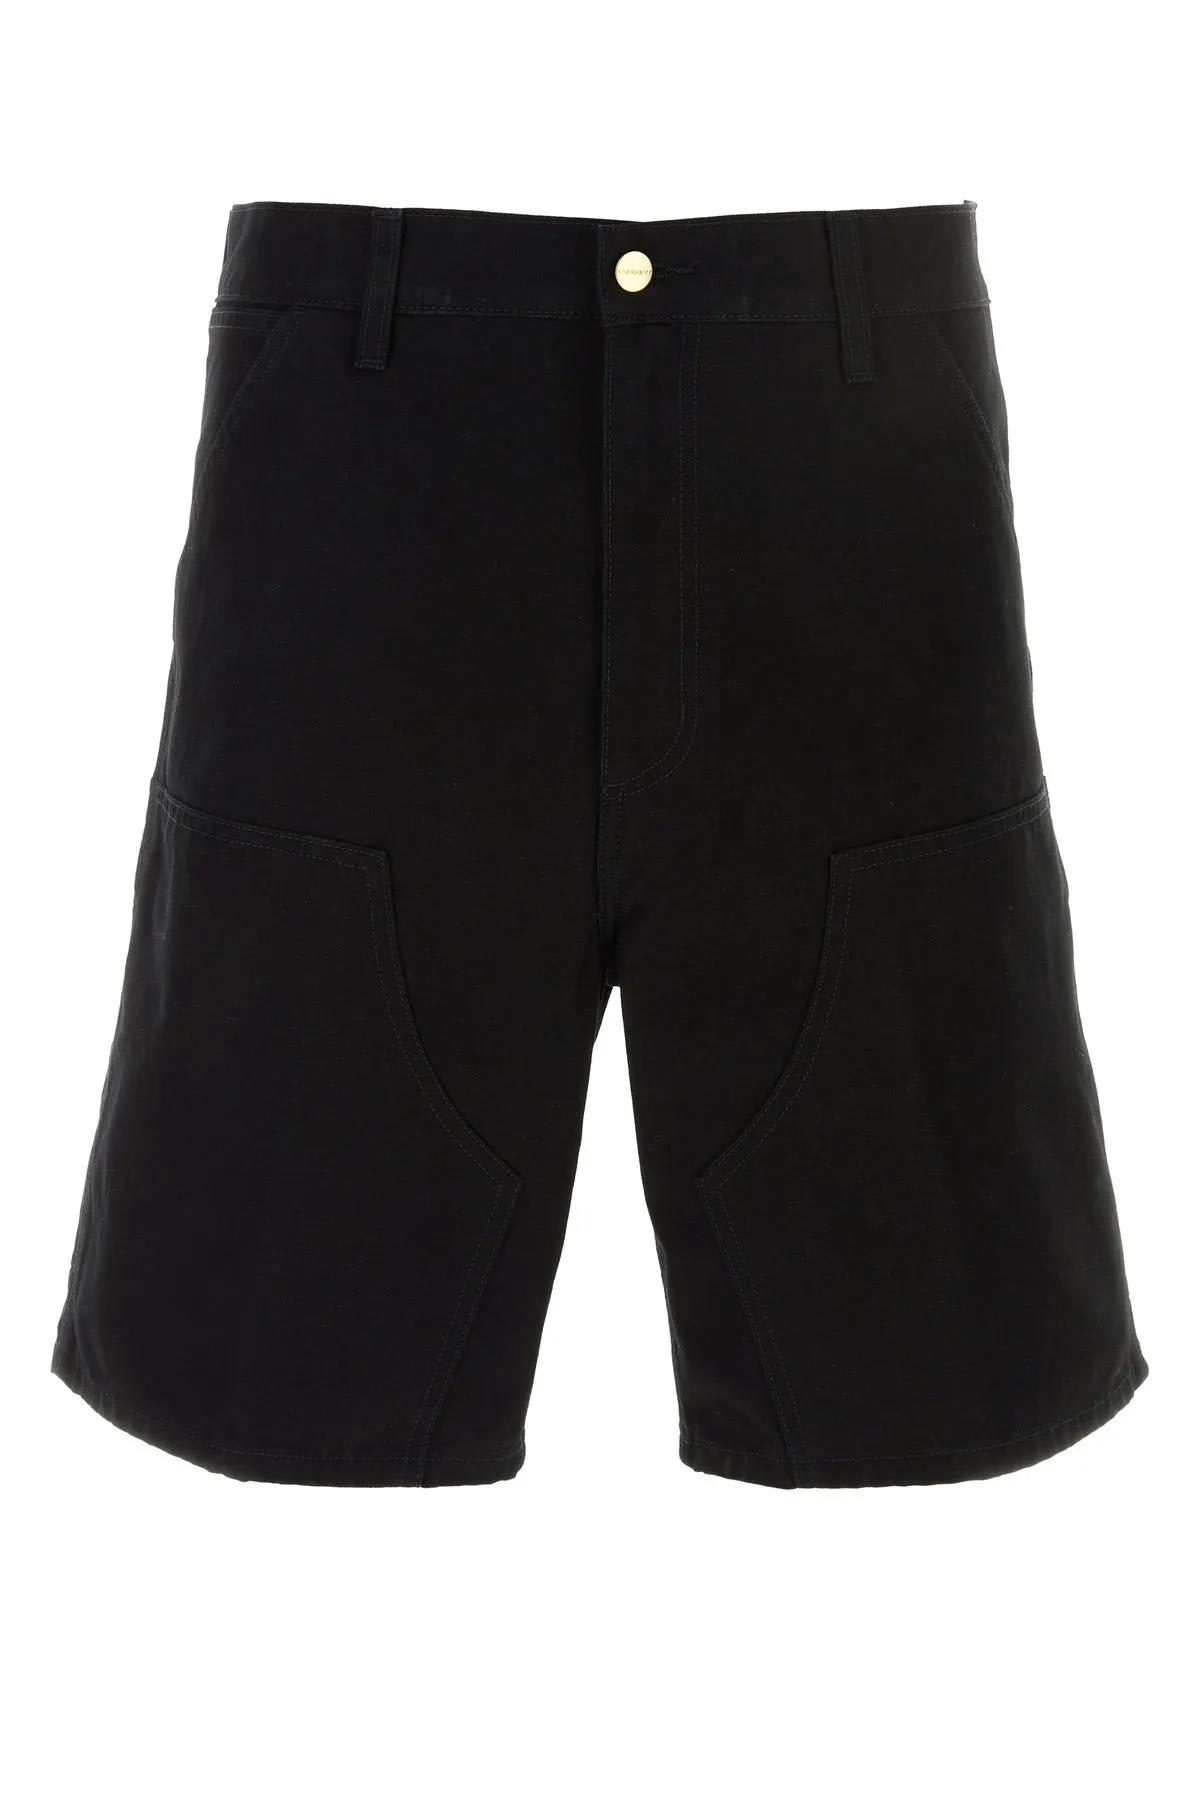 Shop Carhartt Black Cotton Double Knee Short